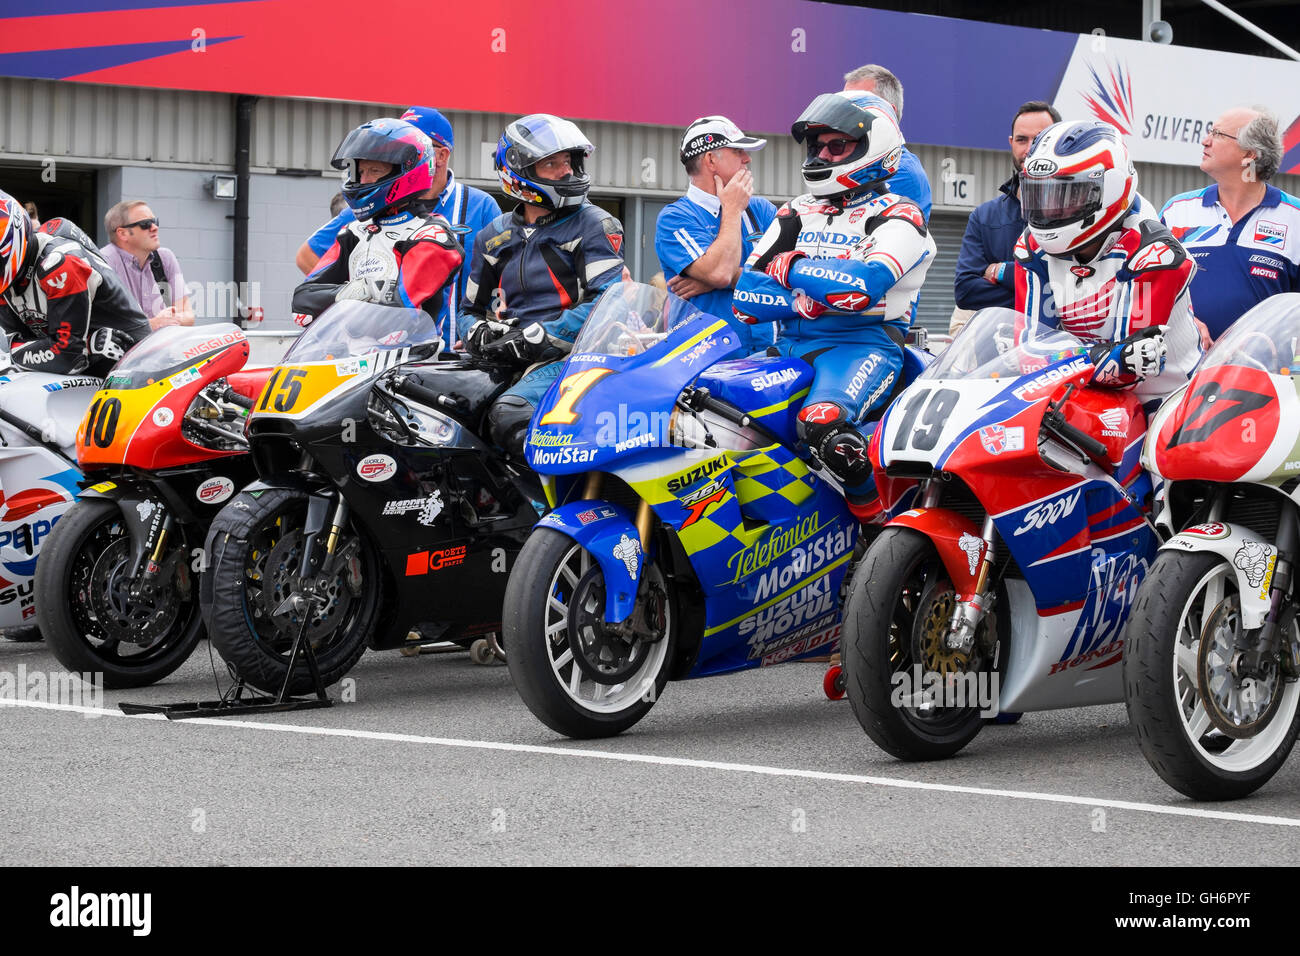 Classic racing de la moto dans le paddock de Silverstone Classic 2016, UK Banque D'Images